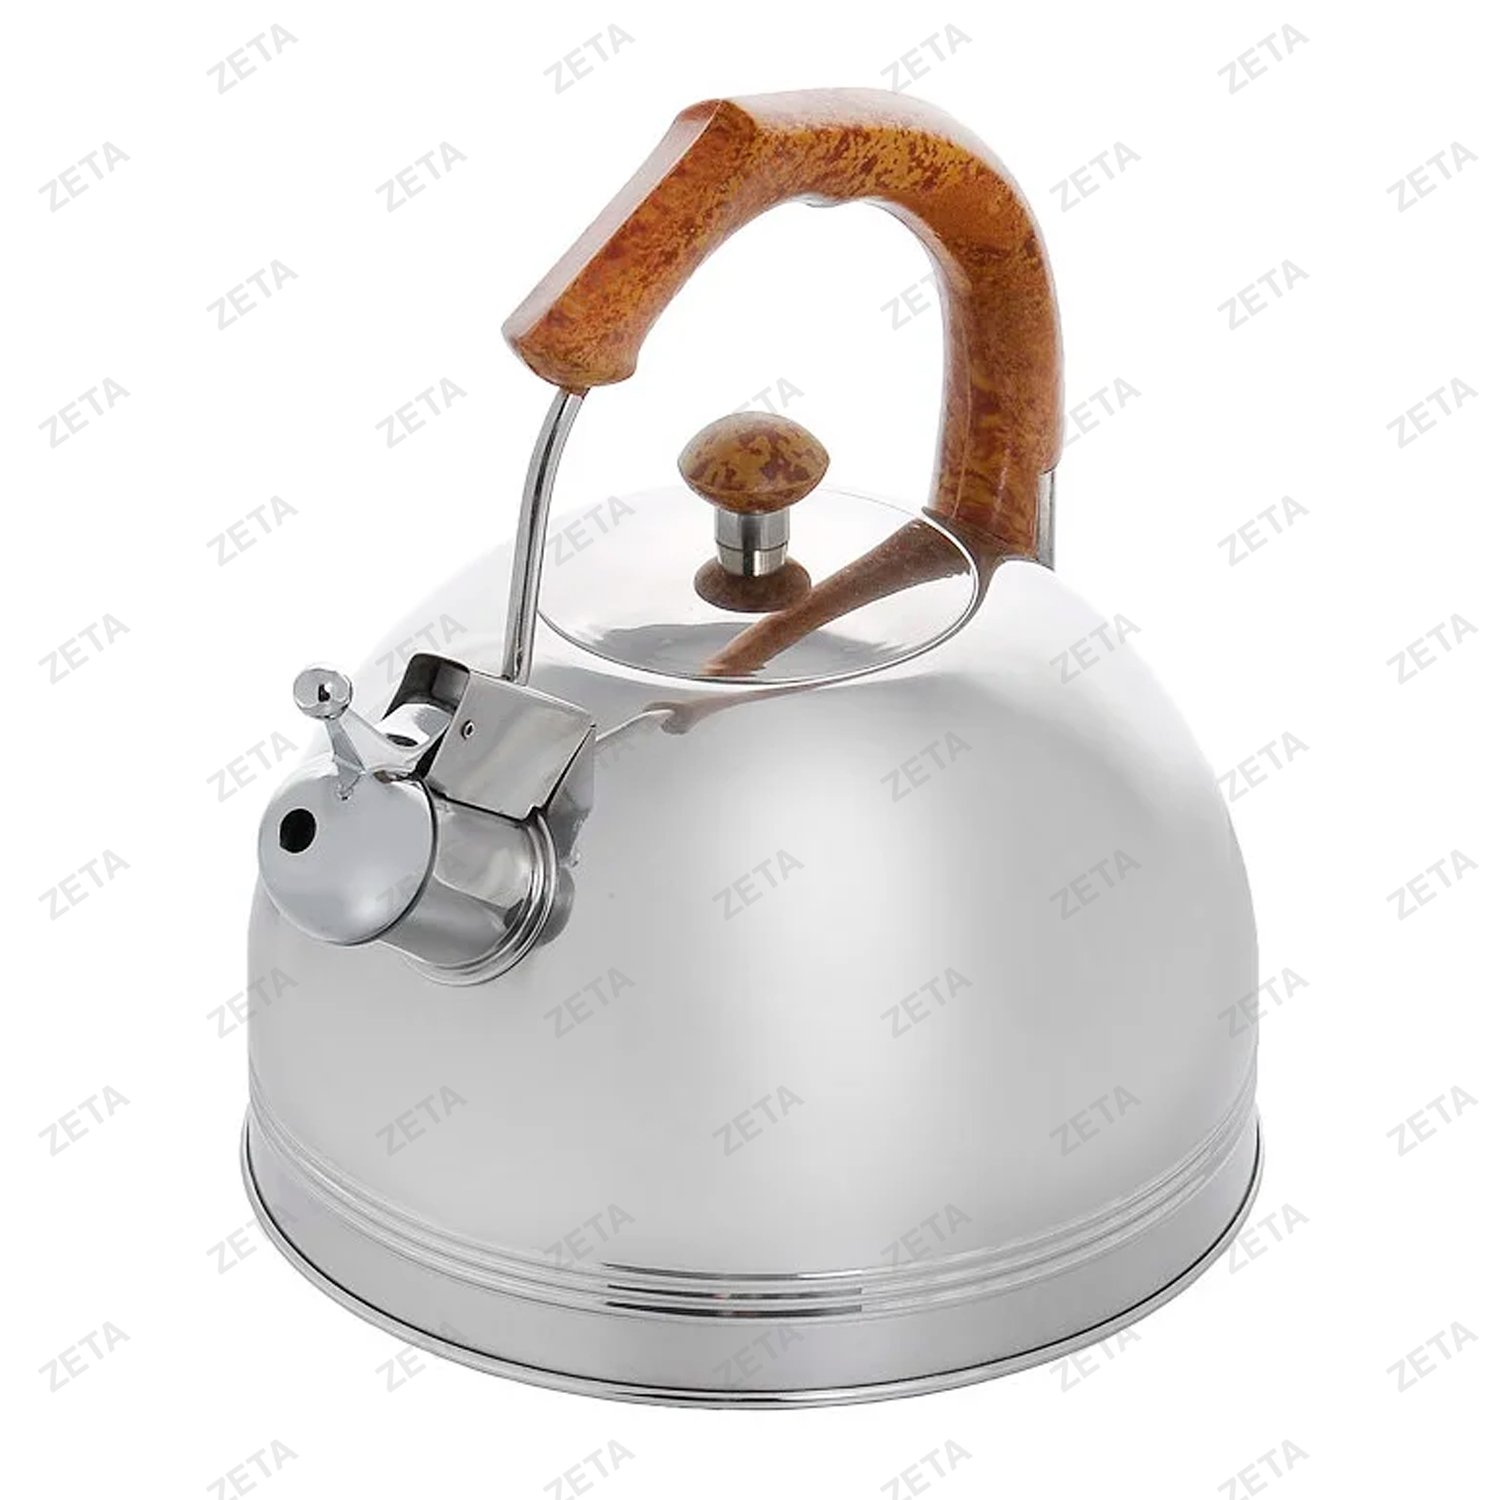 Чайник со свистком LKD-003 3,5 л. серебристый/коричневый Appetite - изображение 2